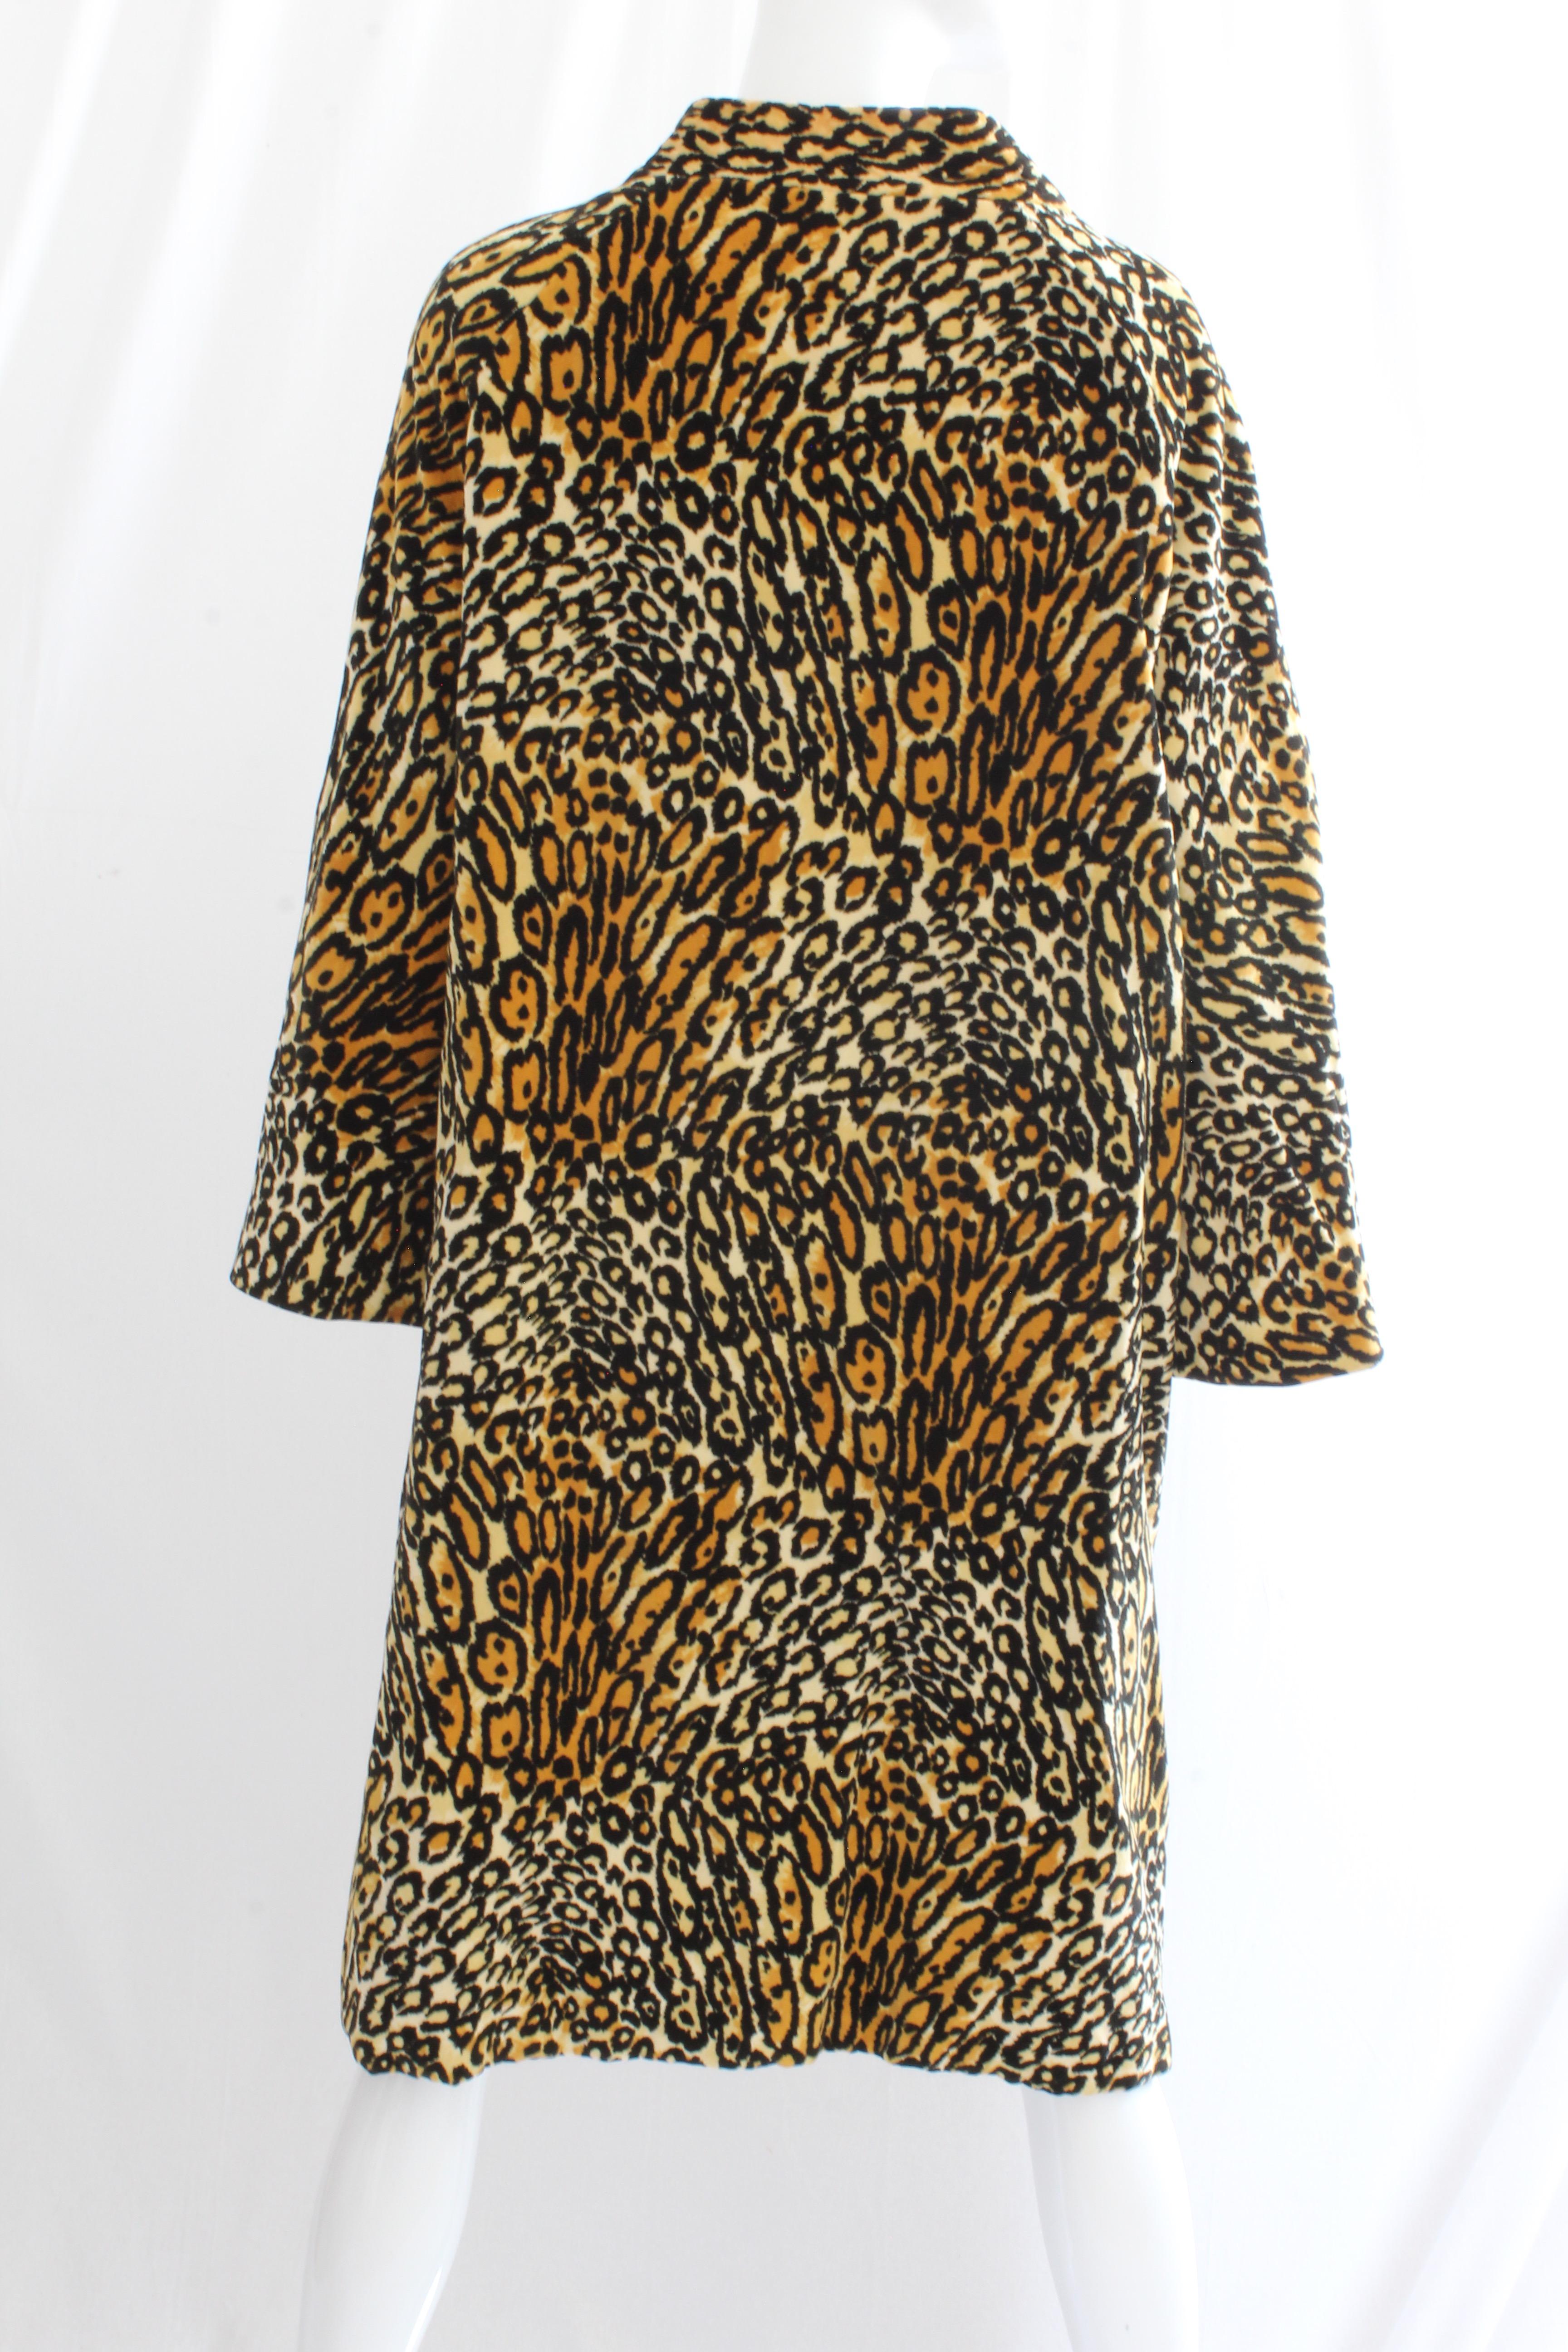 Women's Bill Blass for Bond Street Velvet Leopard Print Coat 1970s Sz M